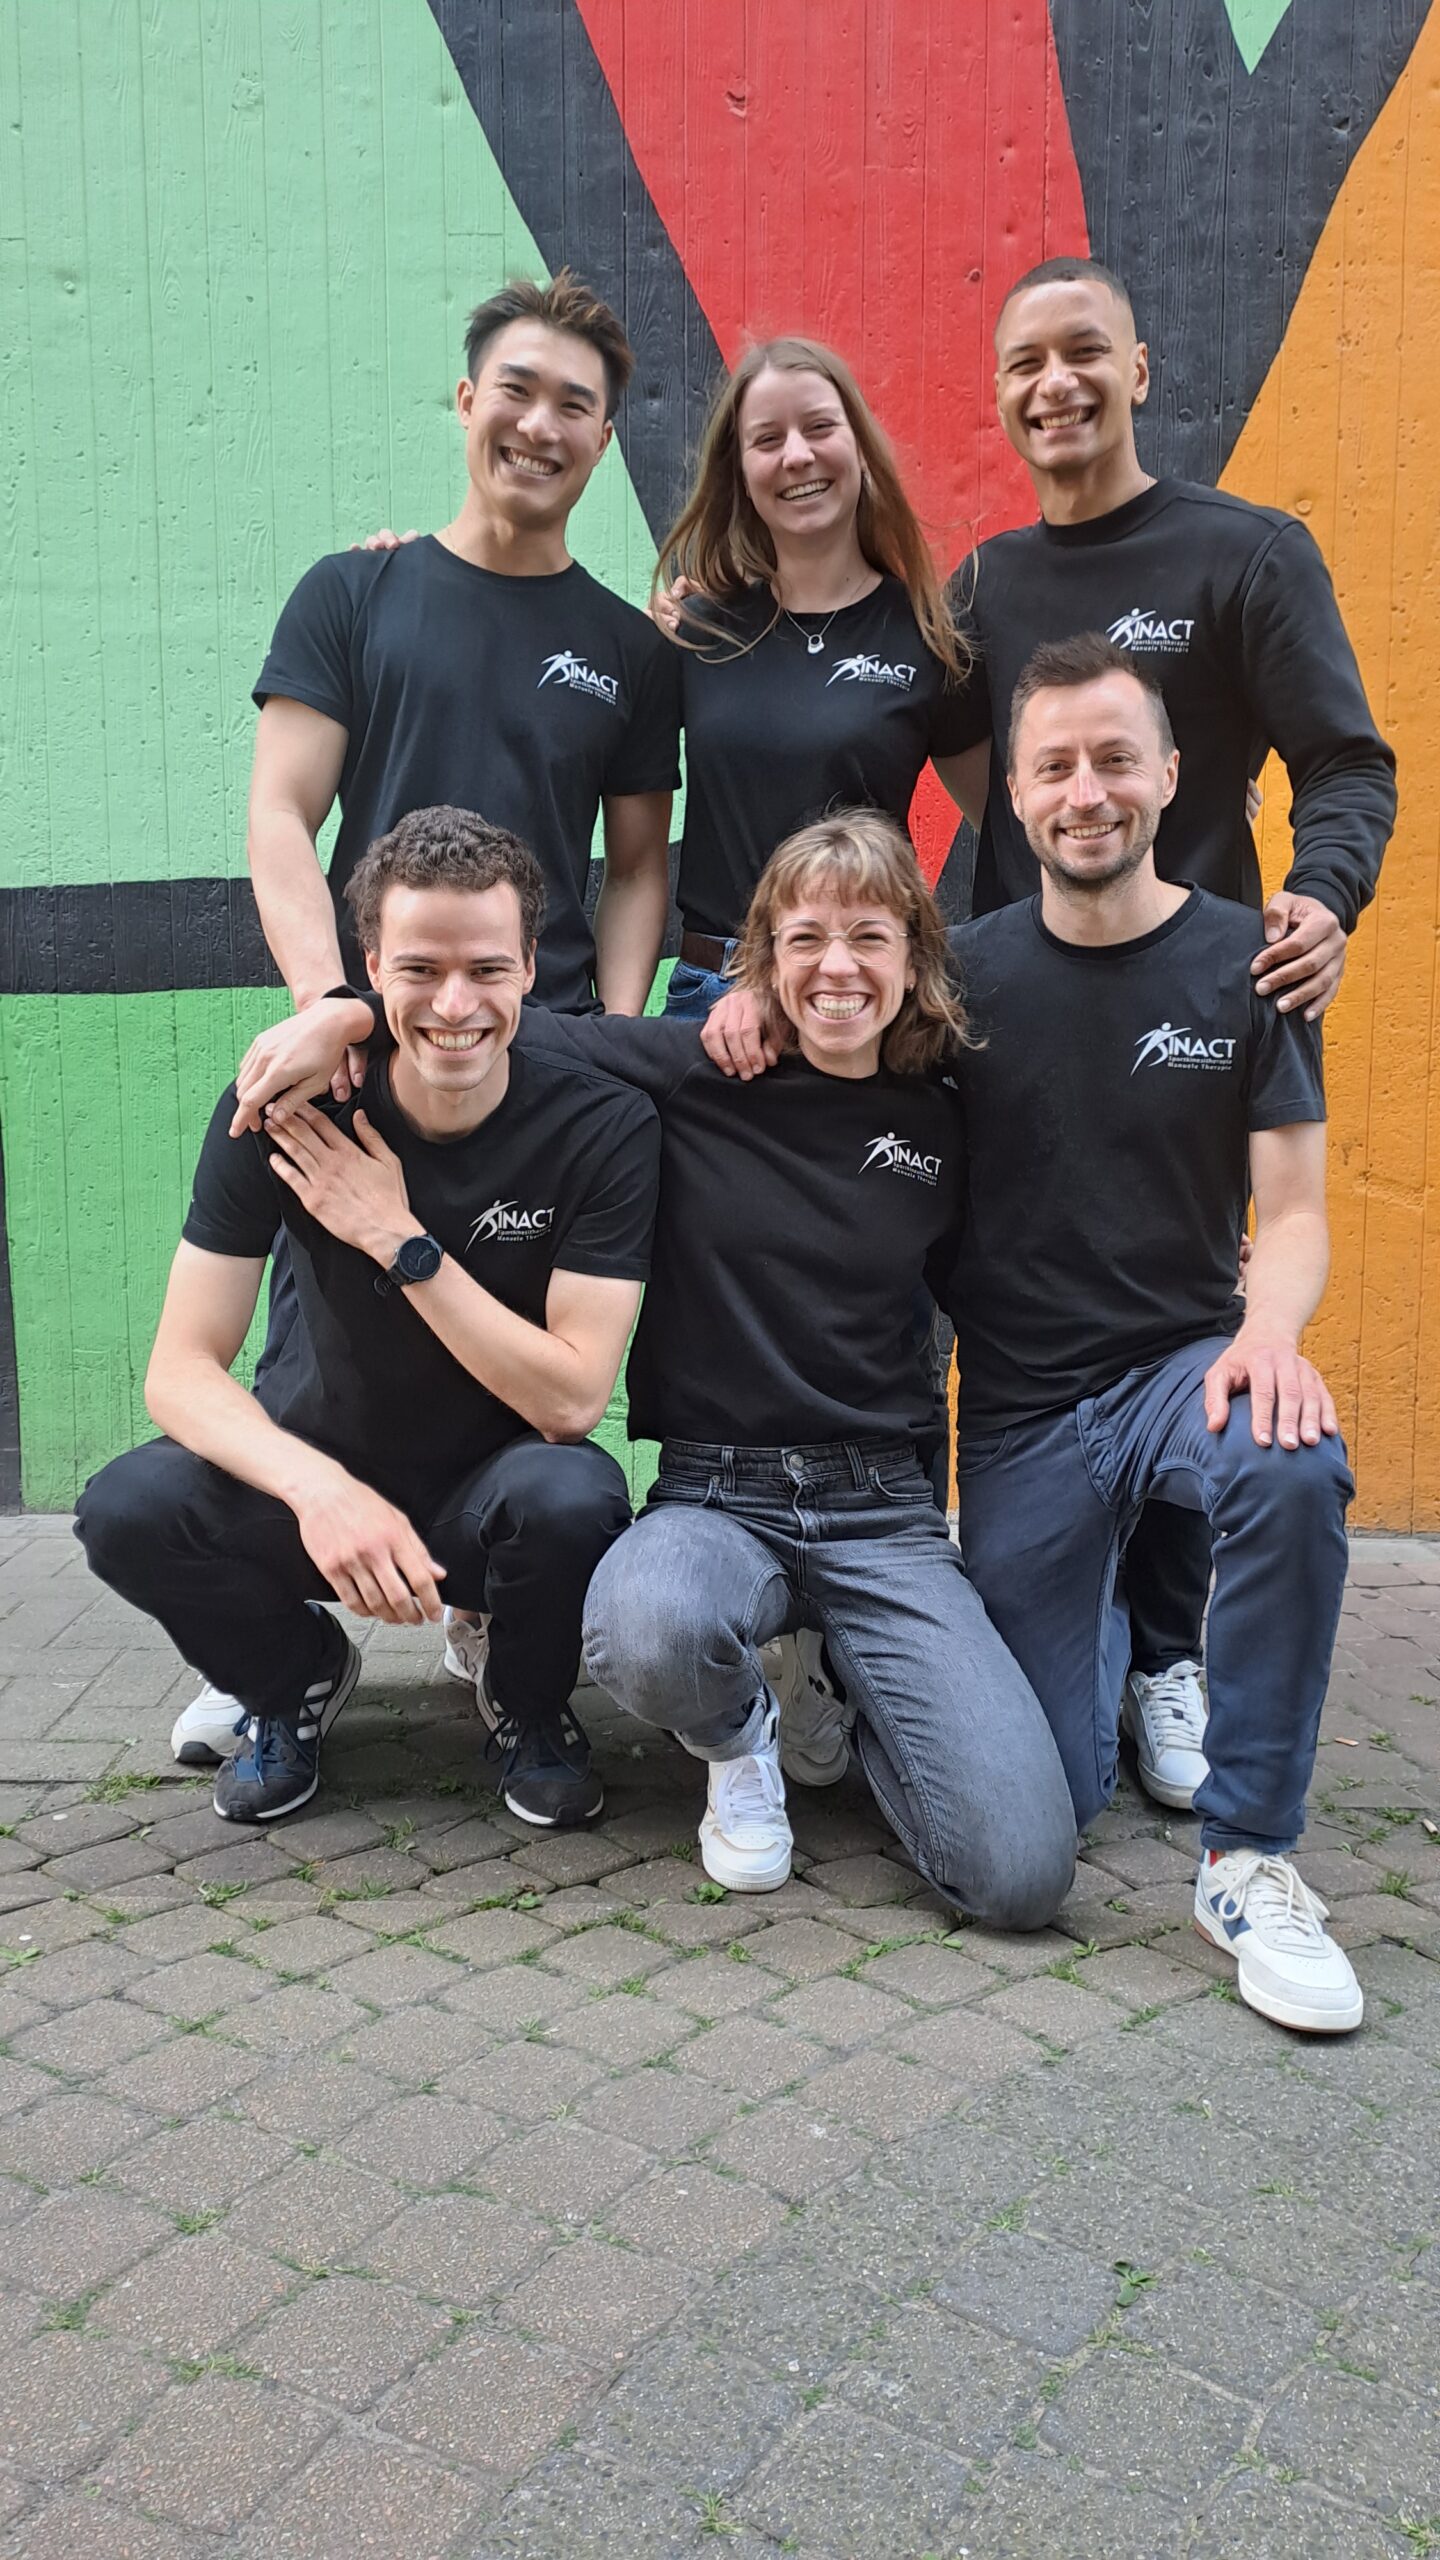 Team Kinact sportkinesist Mechelen